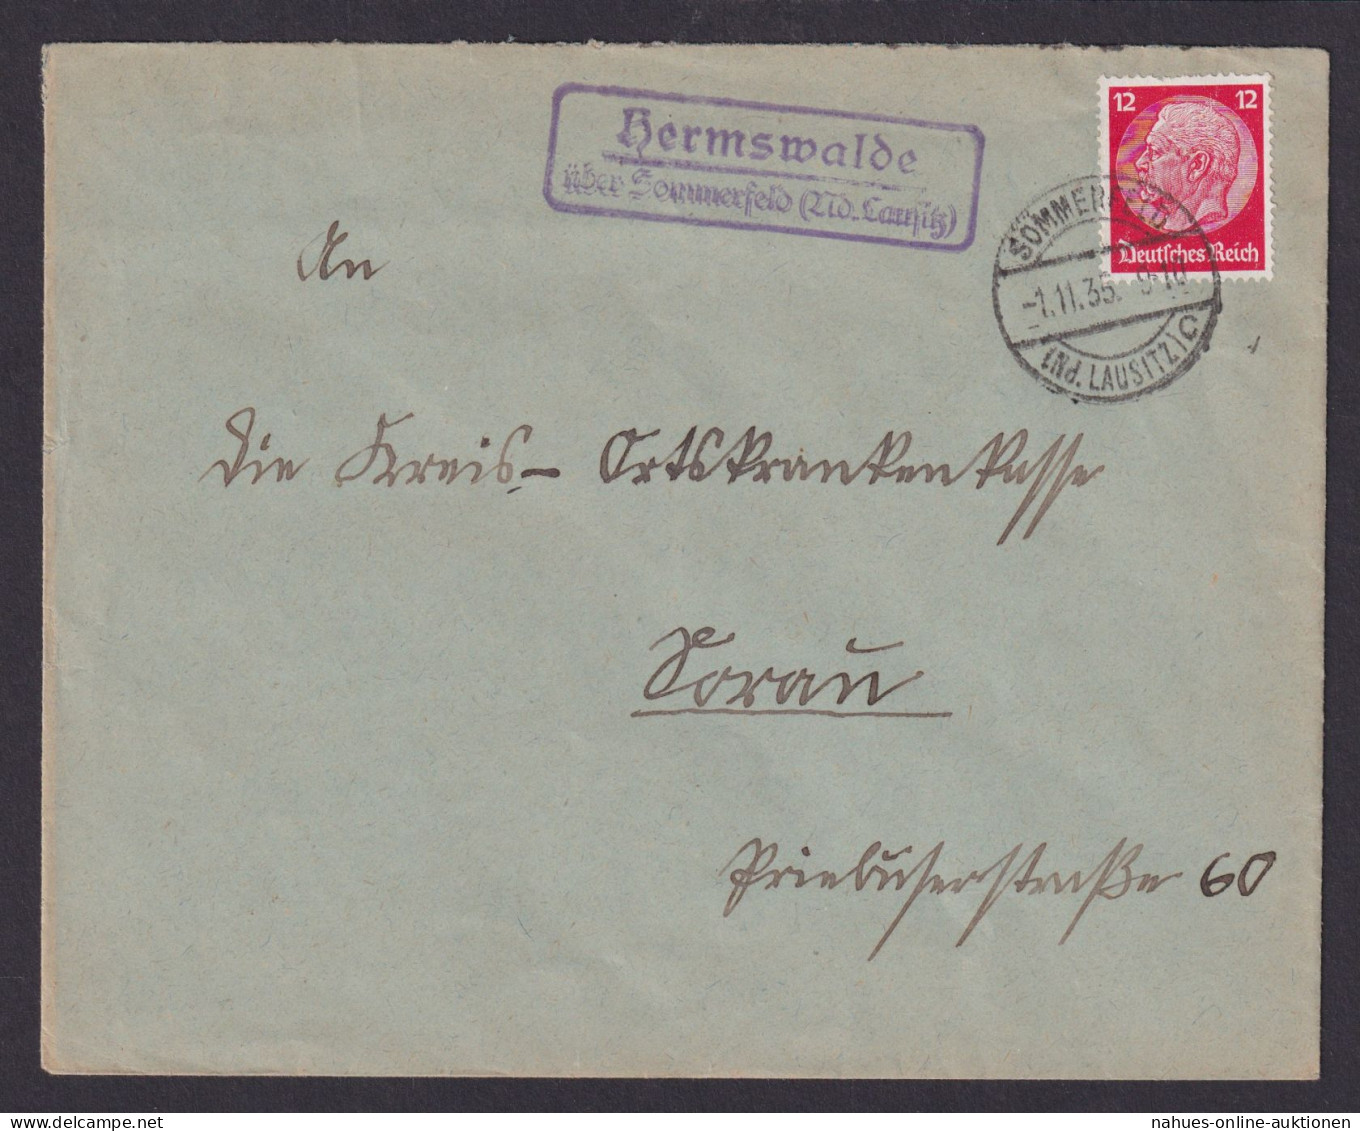 Hermswalde über Sommerfeld Niederlausitz Brandenburg Deutsches Reich Brief - Covers & Documents